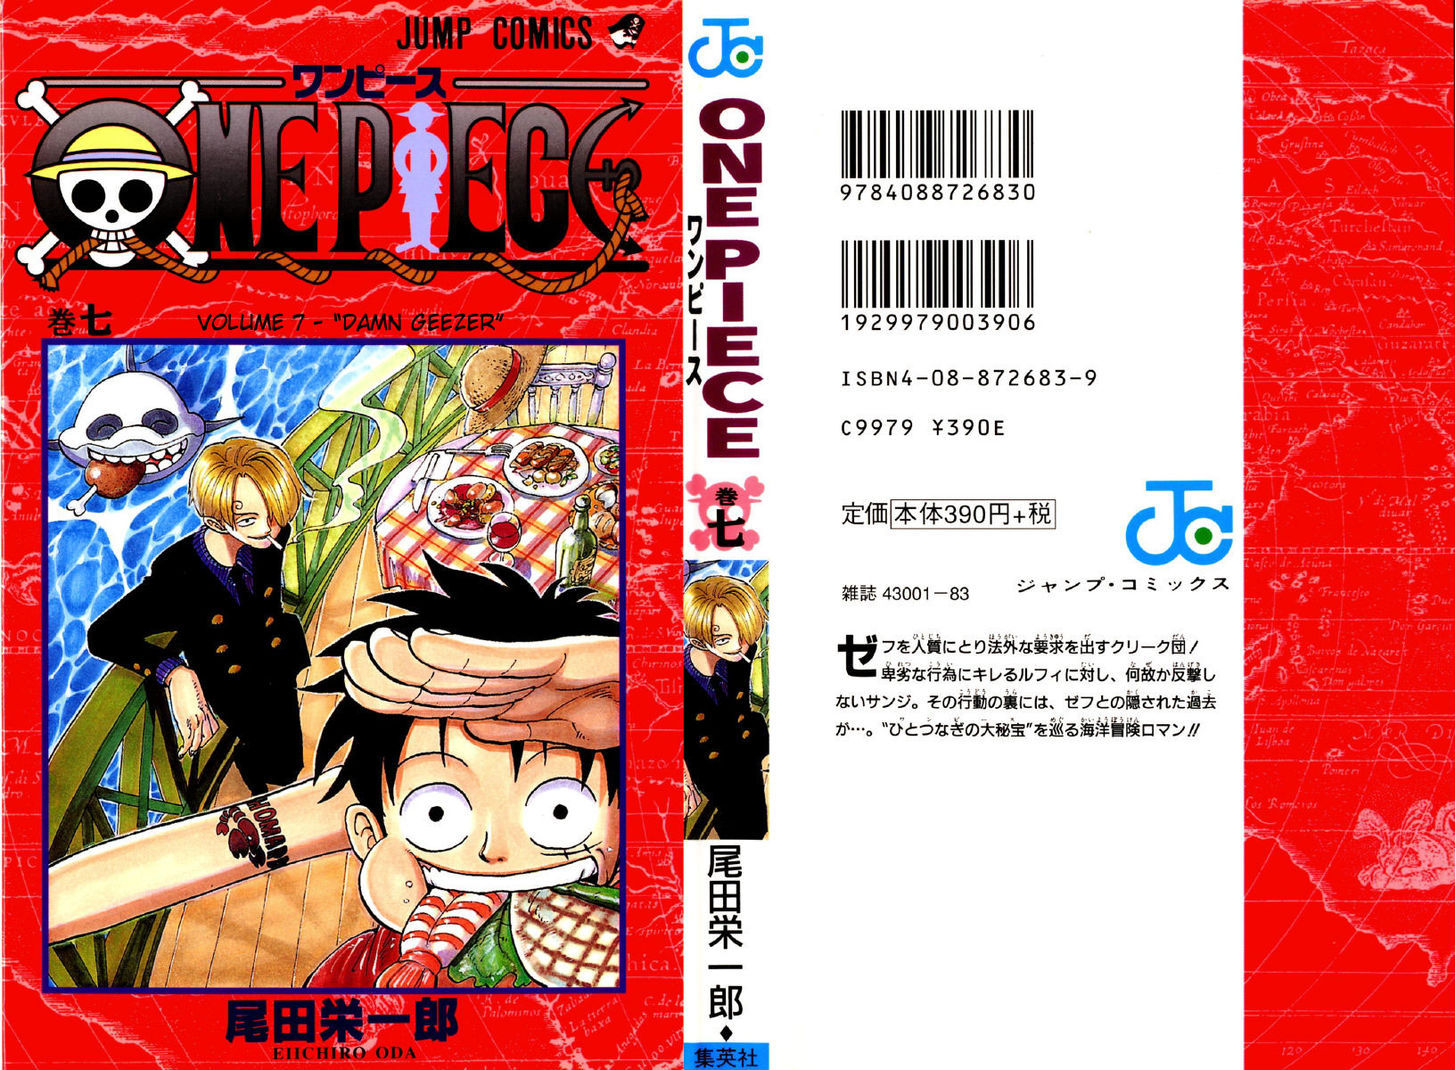 One Piece 54